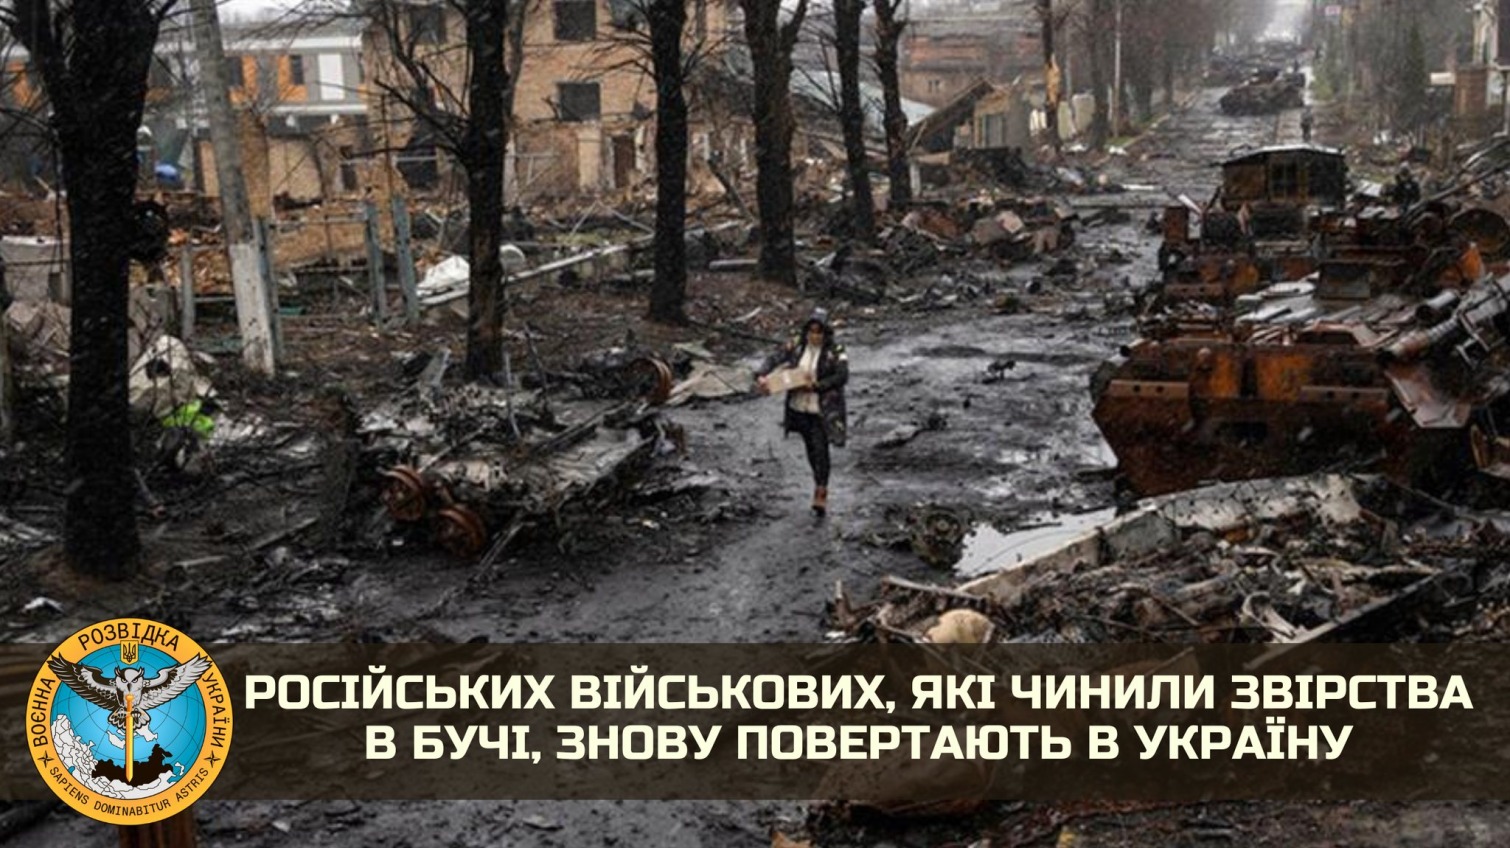 Оккупантов, совершивших зверства в Буче, снова вернут в Украину «фото»